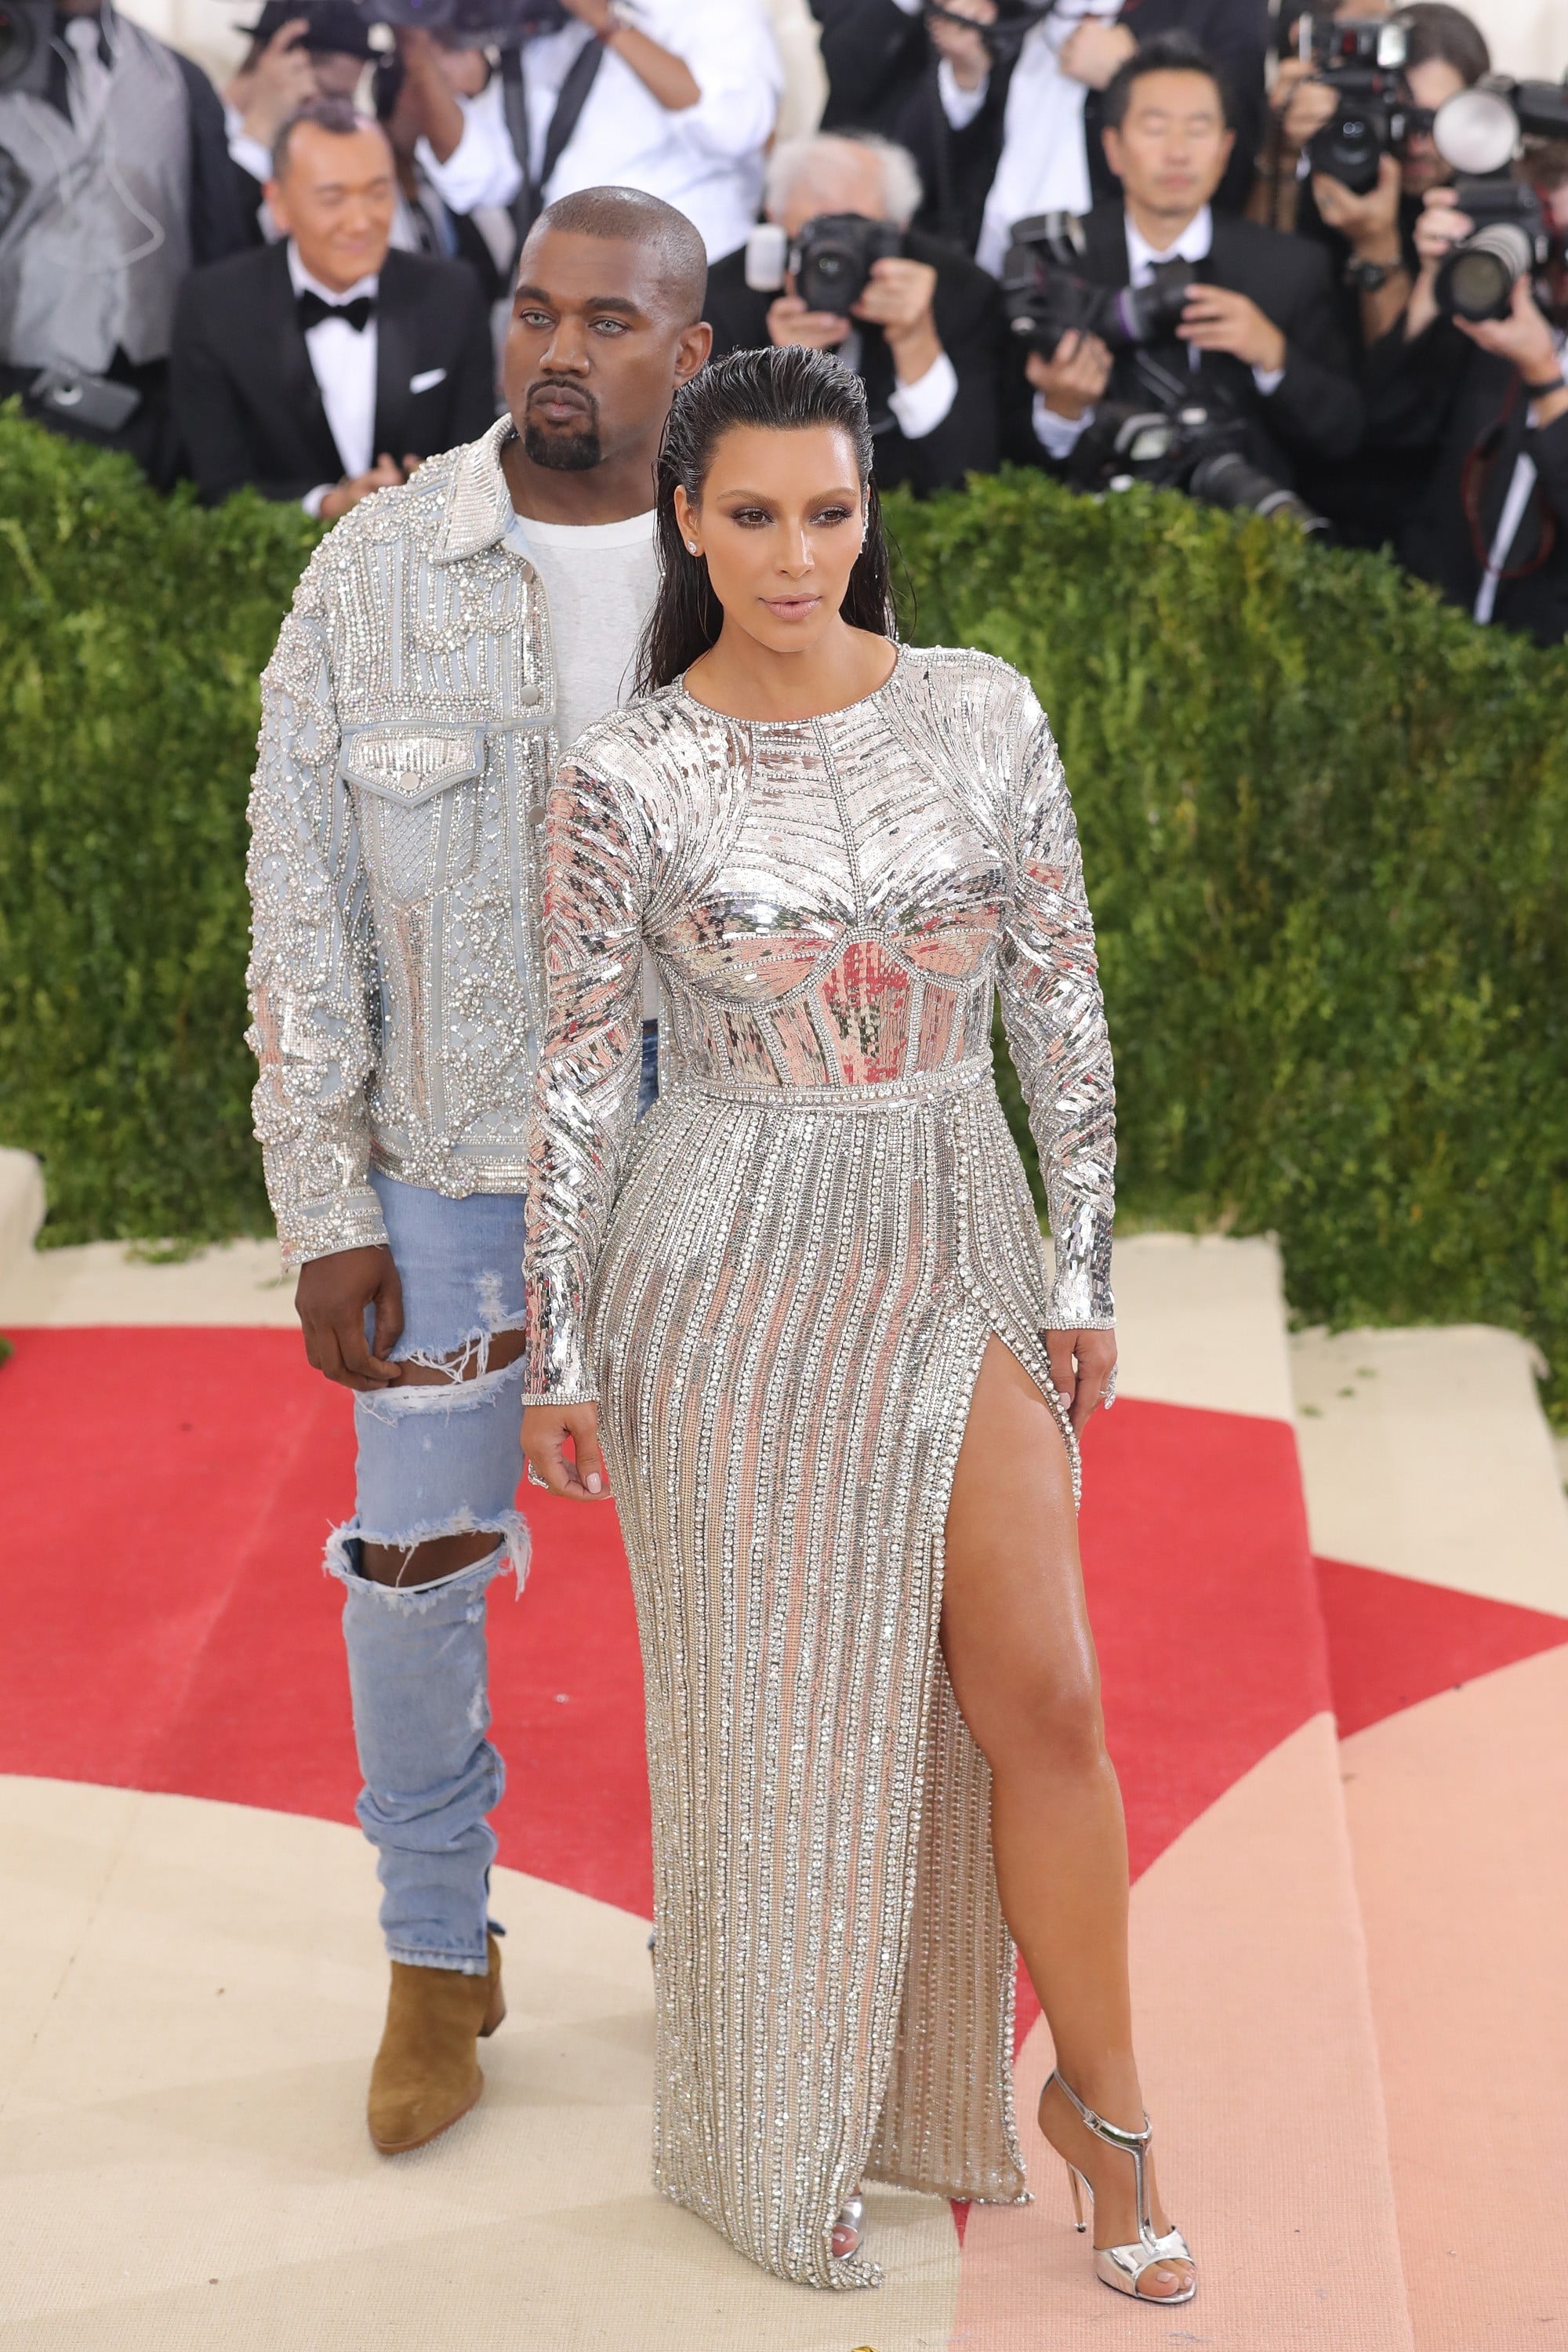 Kim Kardashian West Pairs Blazer & Bra With Clear Yeezy Mules [PHOTOS]